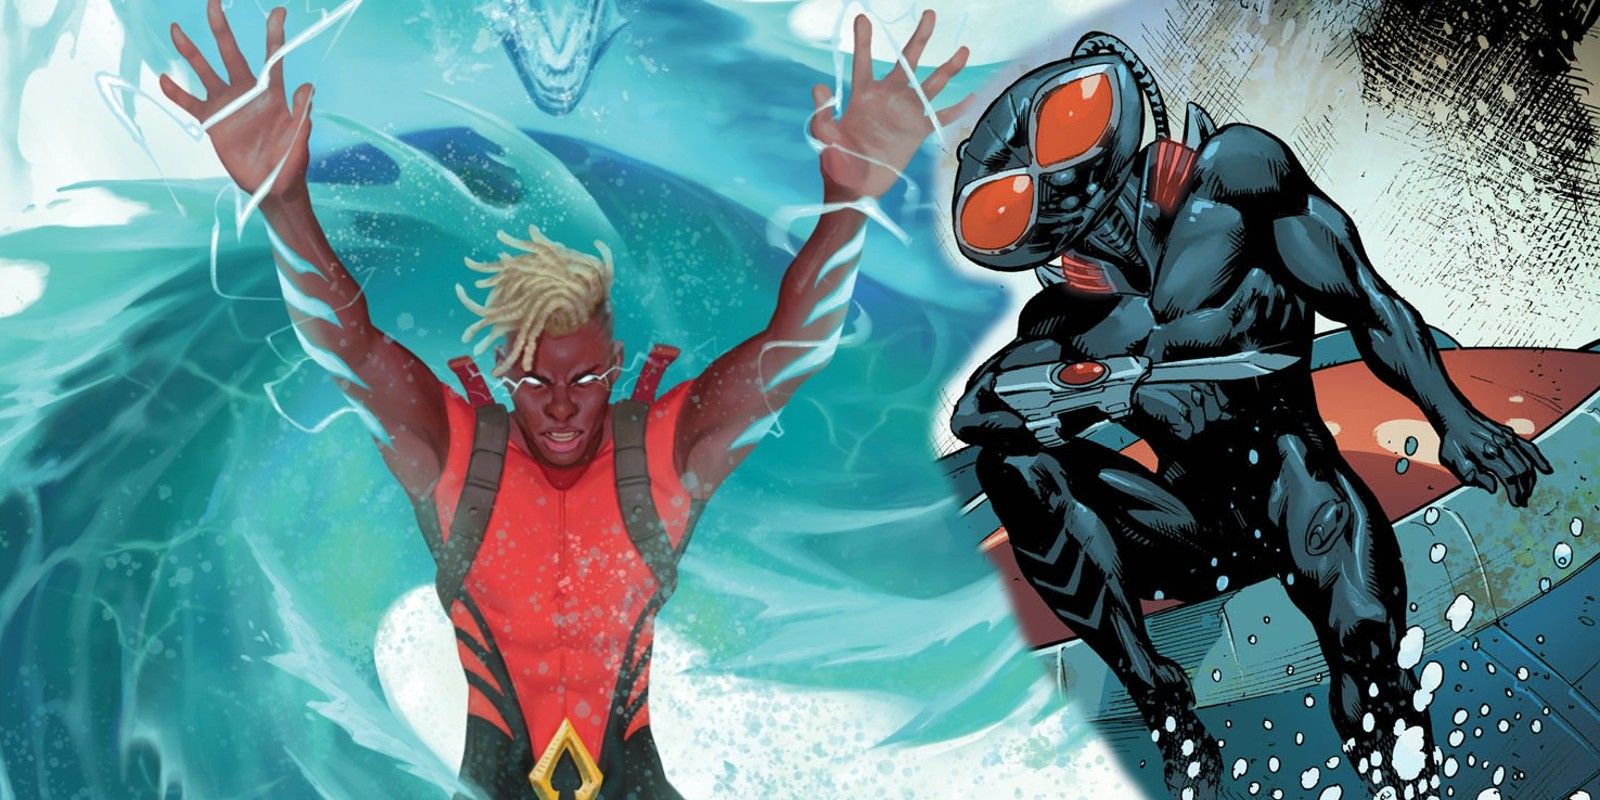 Jackson Hyde as Aquaman with Black Manta